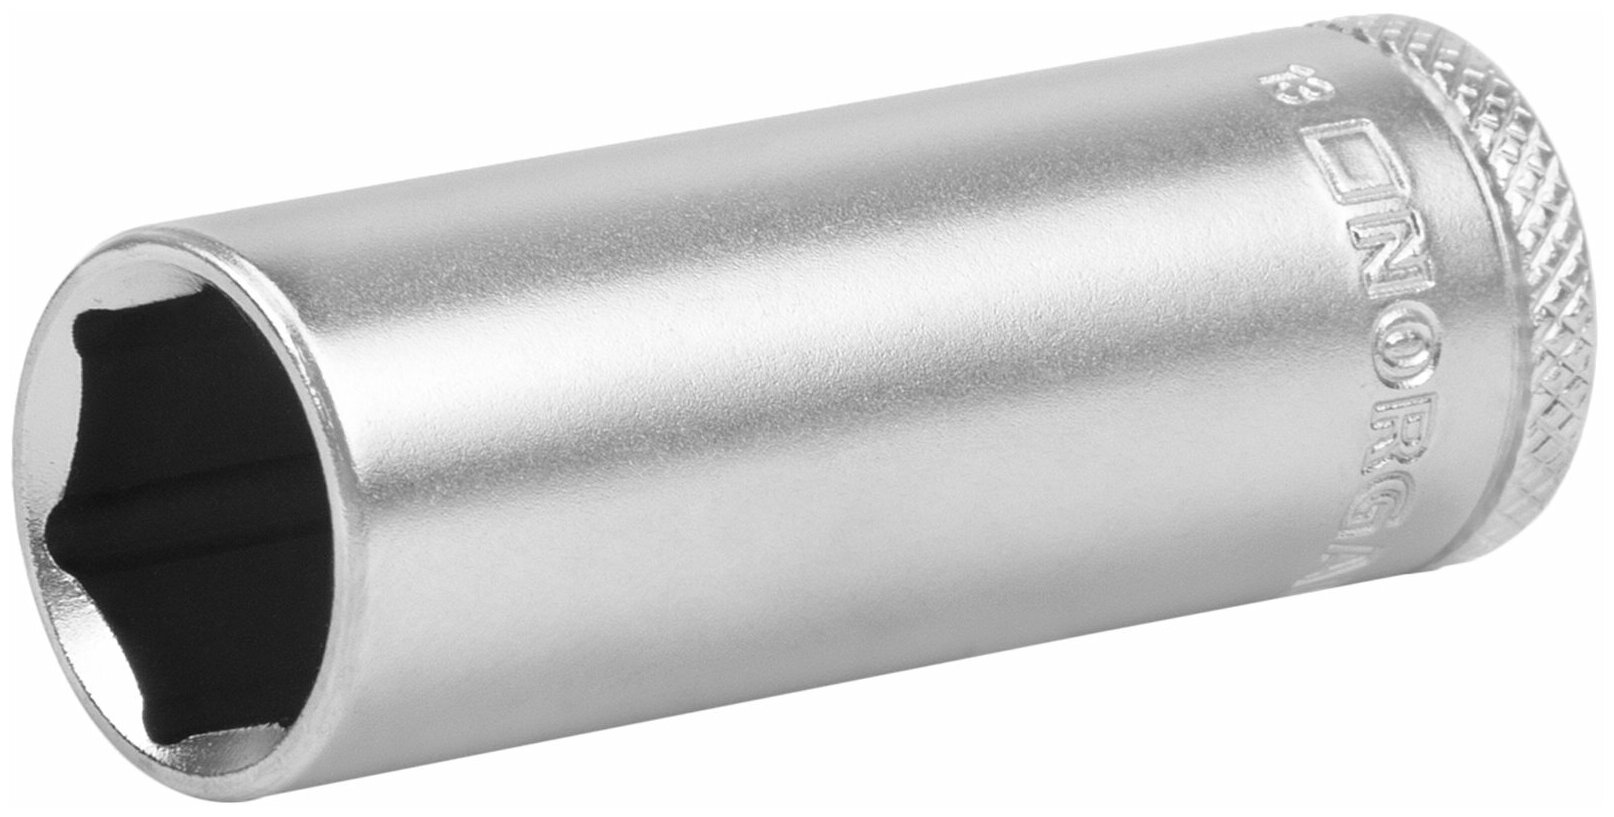 Головка торцевая удлиненная 1/4" NORGAU Industrial 13 мм с шариковой фиксацией и шлифованной поверхностью